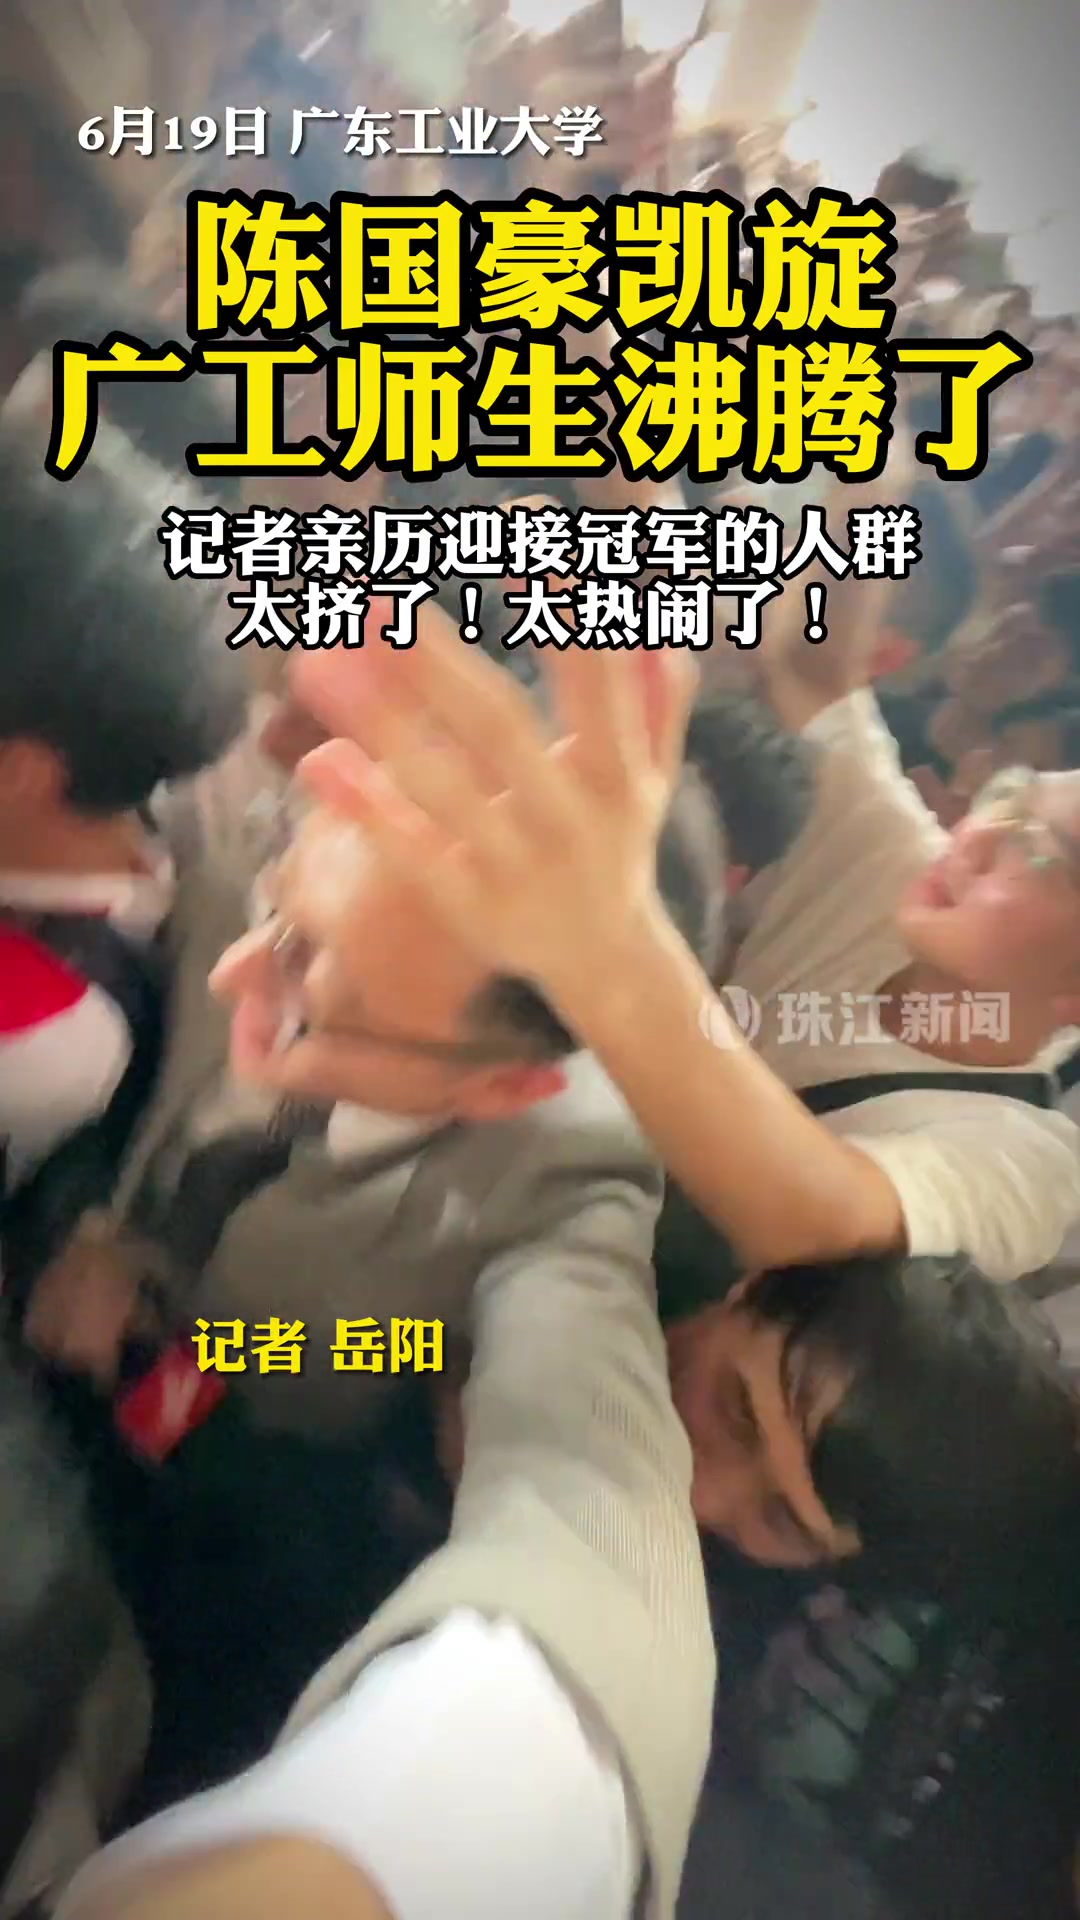 广东工业大学陈国豪凯旋，广工师生沸腾了。